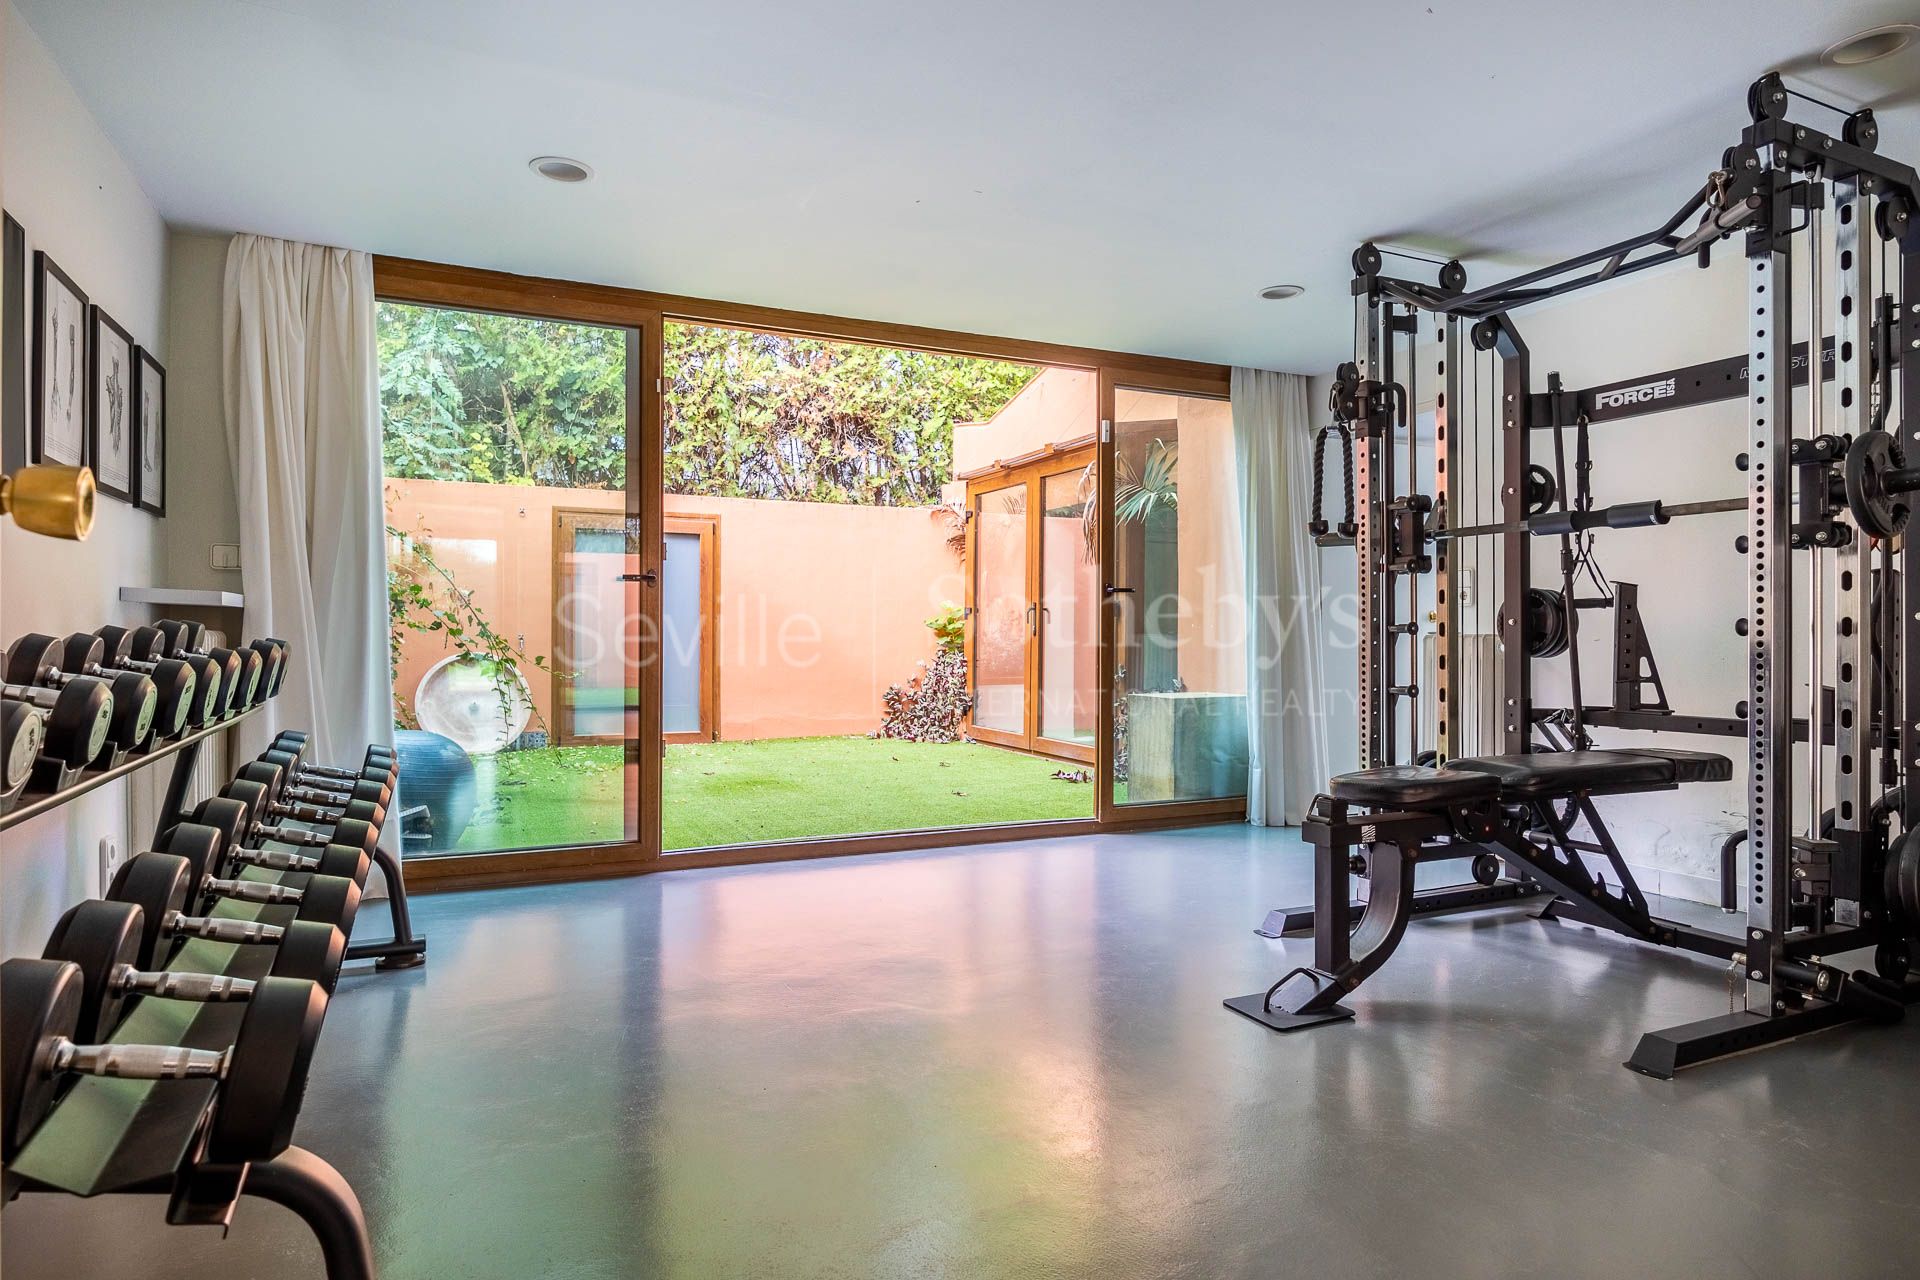 Detached villa with indoor pool and gym in Las Canteras